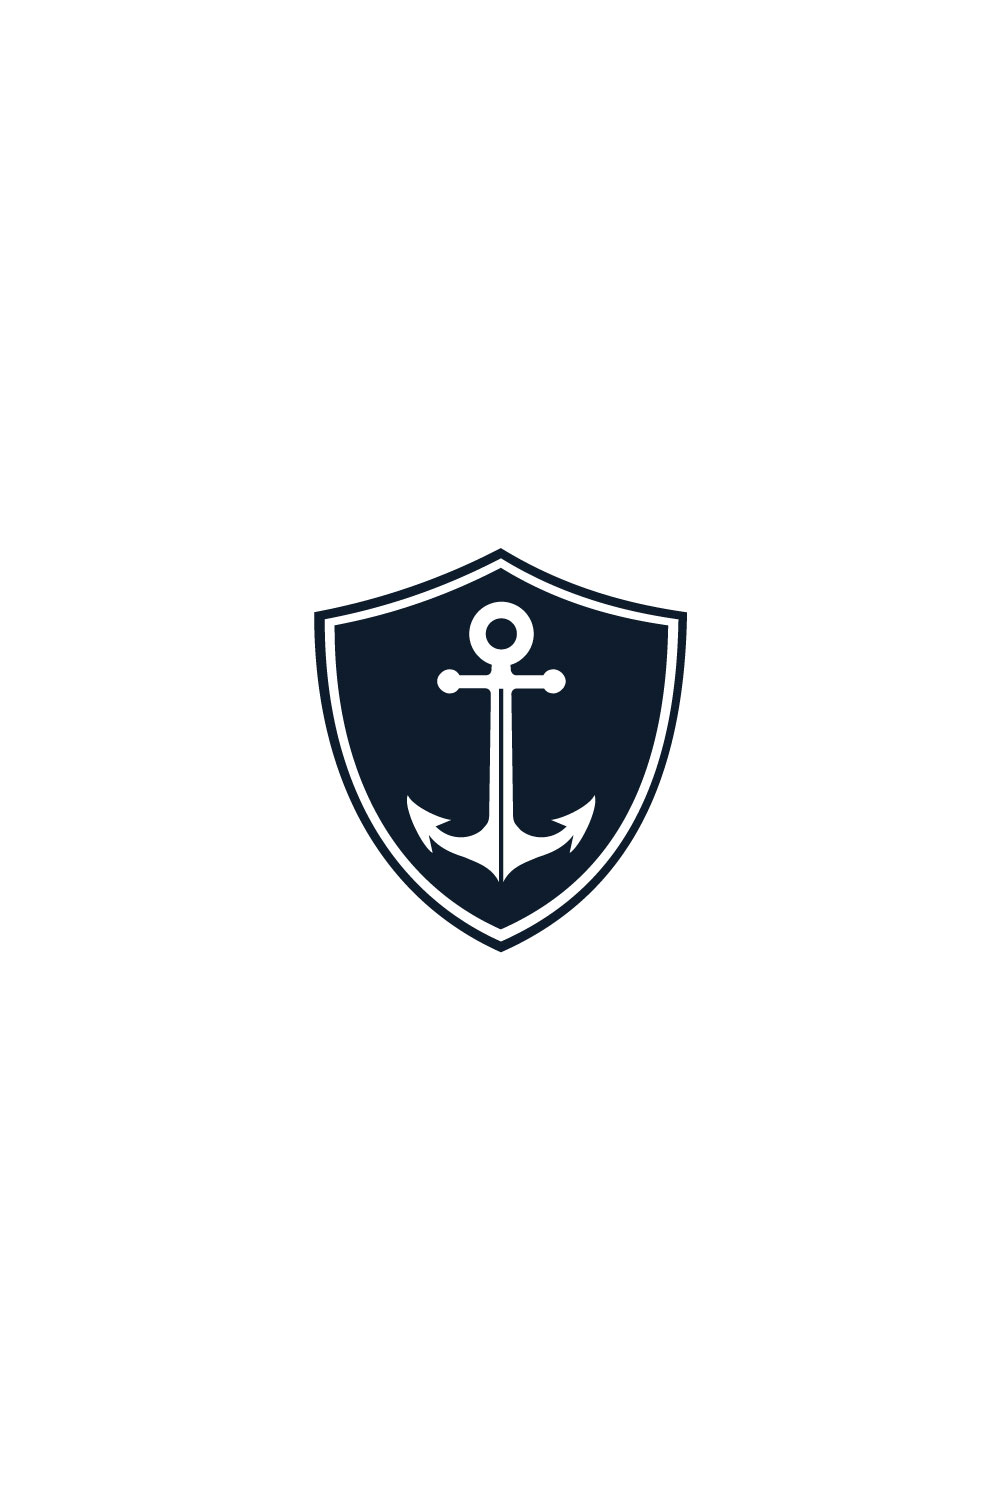 Shield Anchor Logo Vector pinterest image.